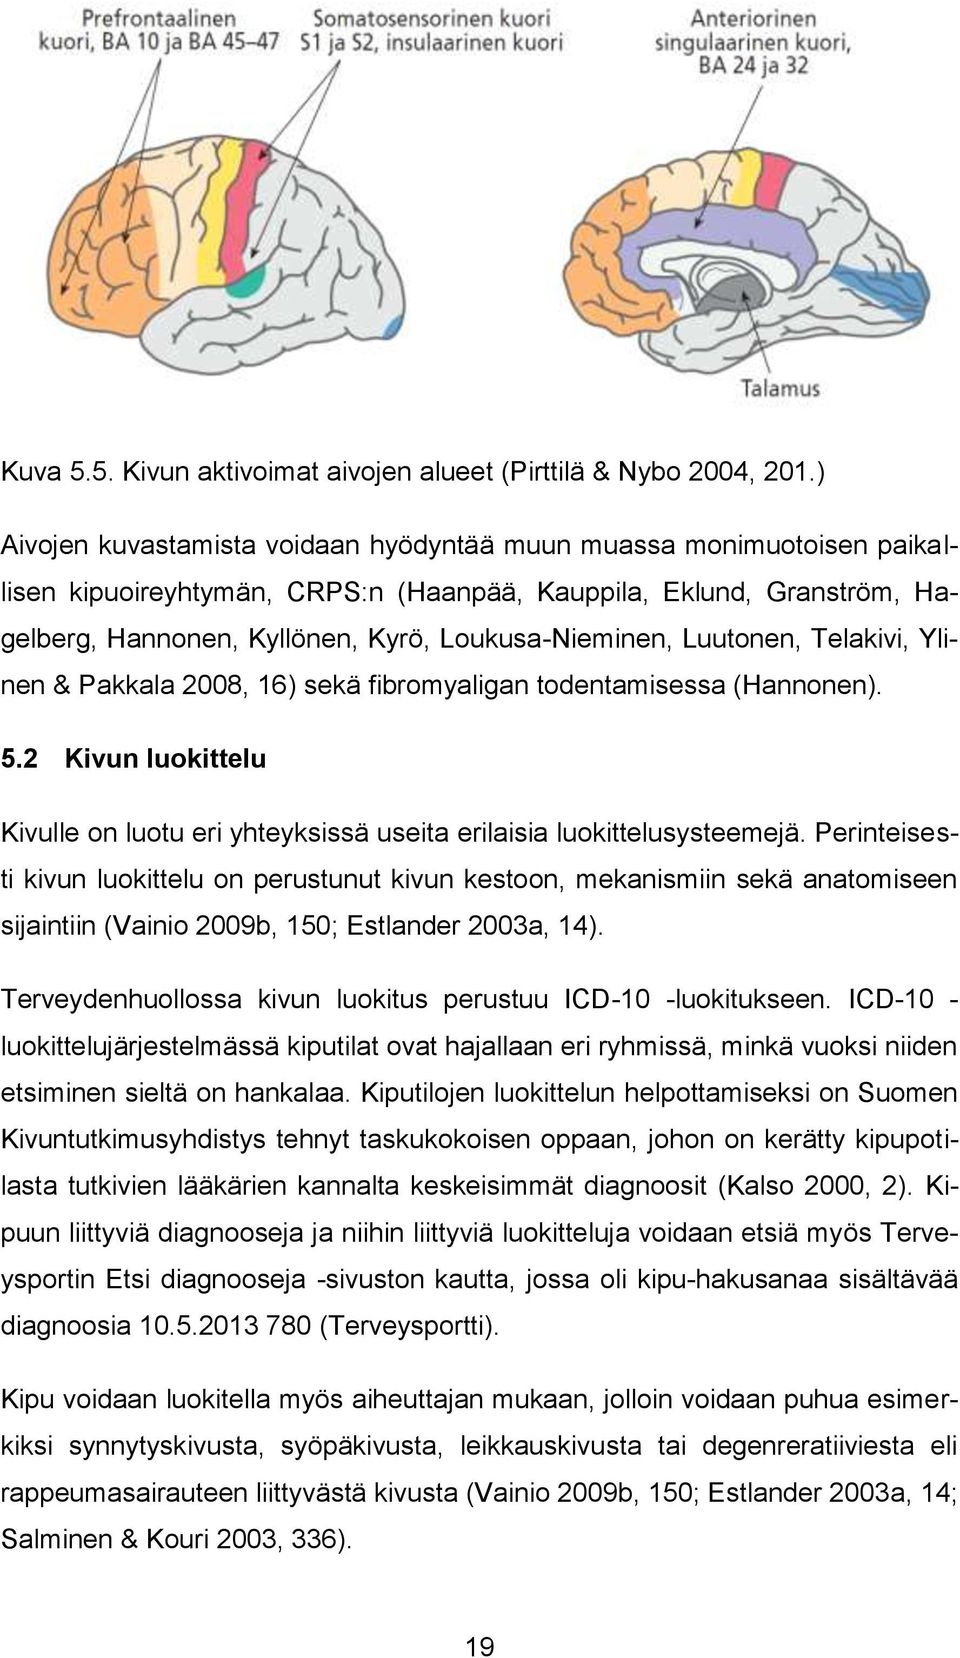 Luutonen, Telakivi, Ylinen & Pakkala 2008, 16) sekä fibromyaligan todentamisessa (Hannonen). 5.2 Kivun luokittelu Kivulle on luotu eri yhteyksissä useita erilaisia luokittelusysteemejä.